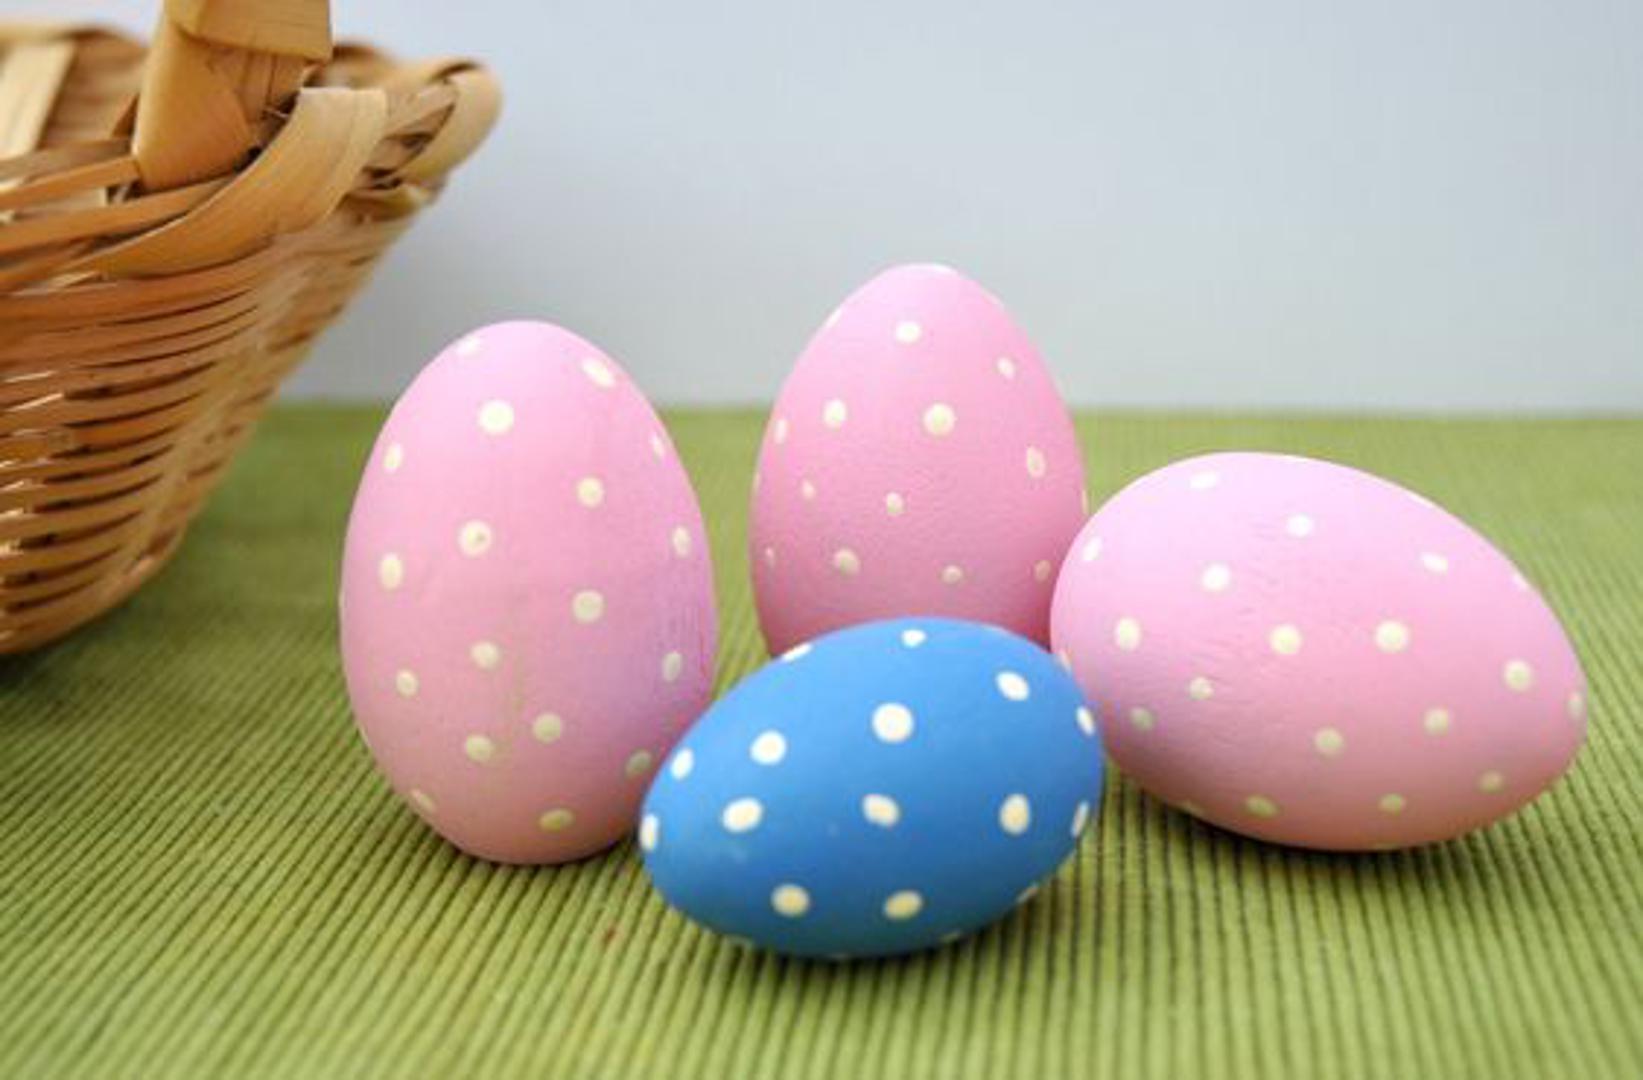 Točkasta jaja: Napravite 3D efekt tako što ćete na obojano jaje stavljati točkice na način da one ostanu malo ispupčene na površini jajeta. Nemojte žuriti: radite jednu po jednu stranu, dopuštajući svakoj strani da se potpuno osuši prije nego nastavite dalje.